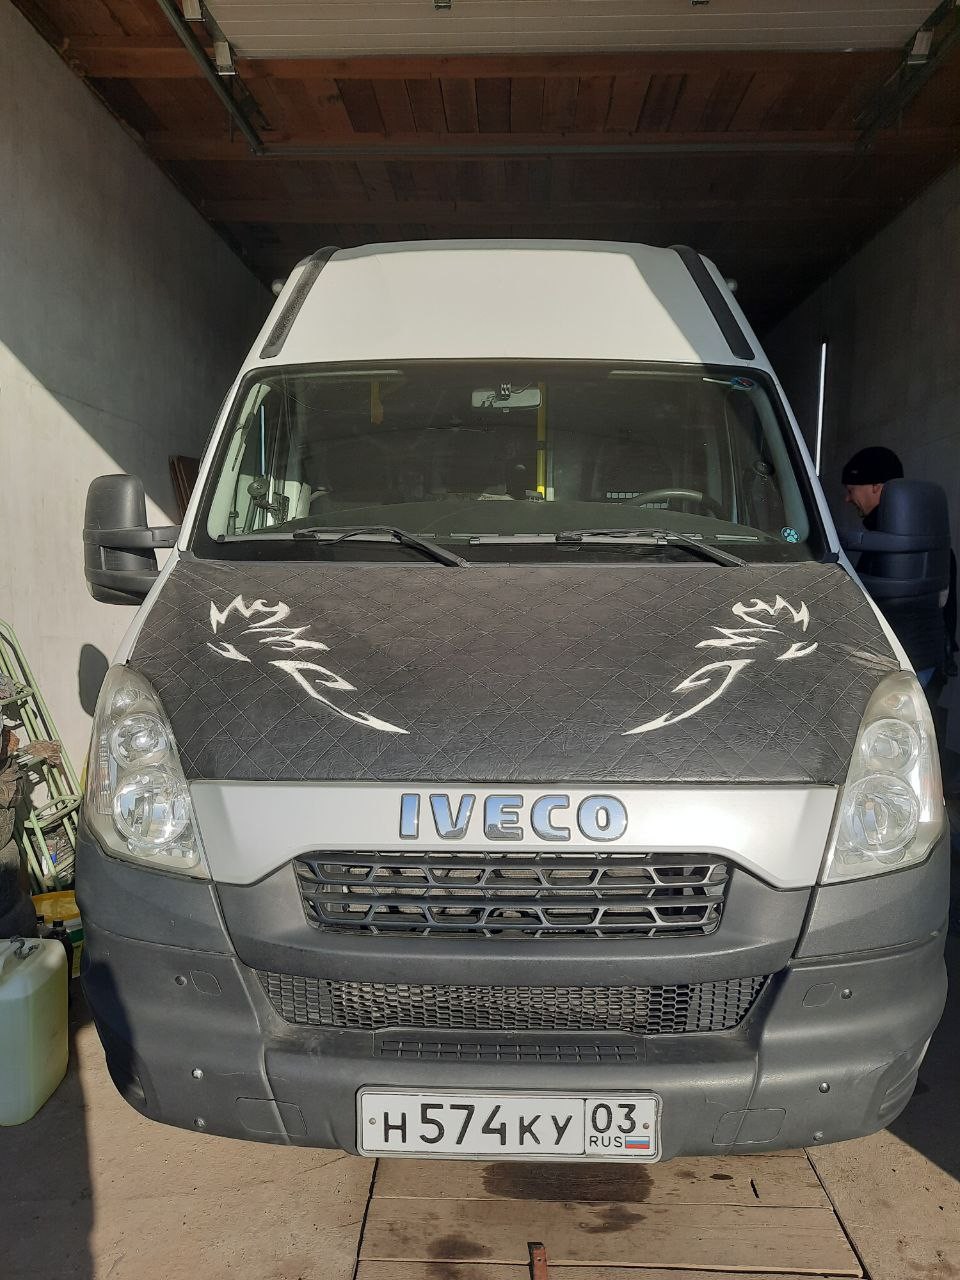 Транспортное средство Iveco Daily, 2013 года выпуска, государственный номер Н574КУ03, идентификацион